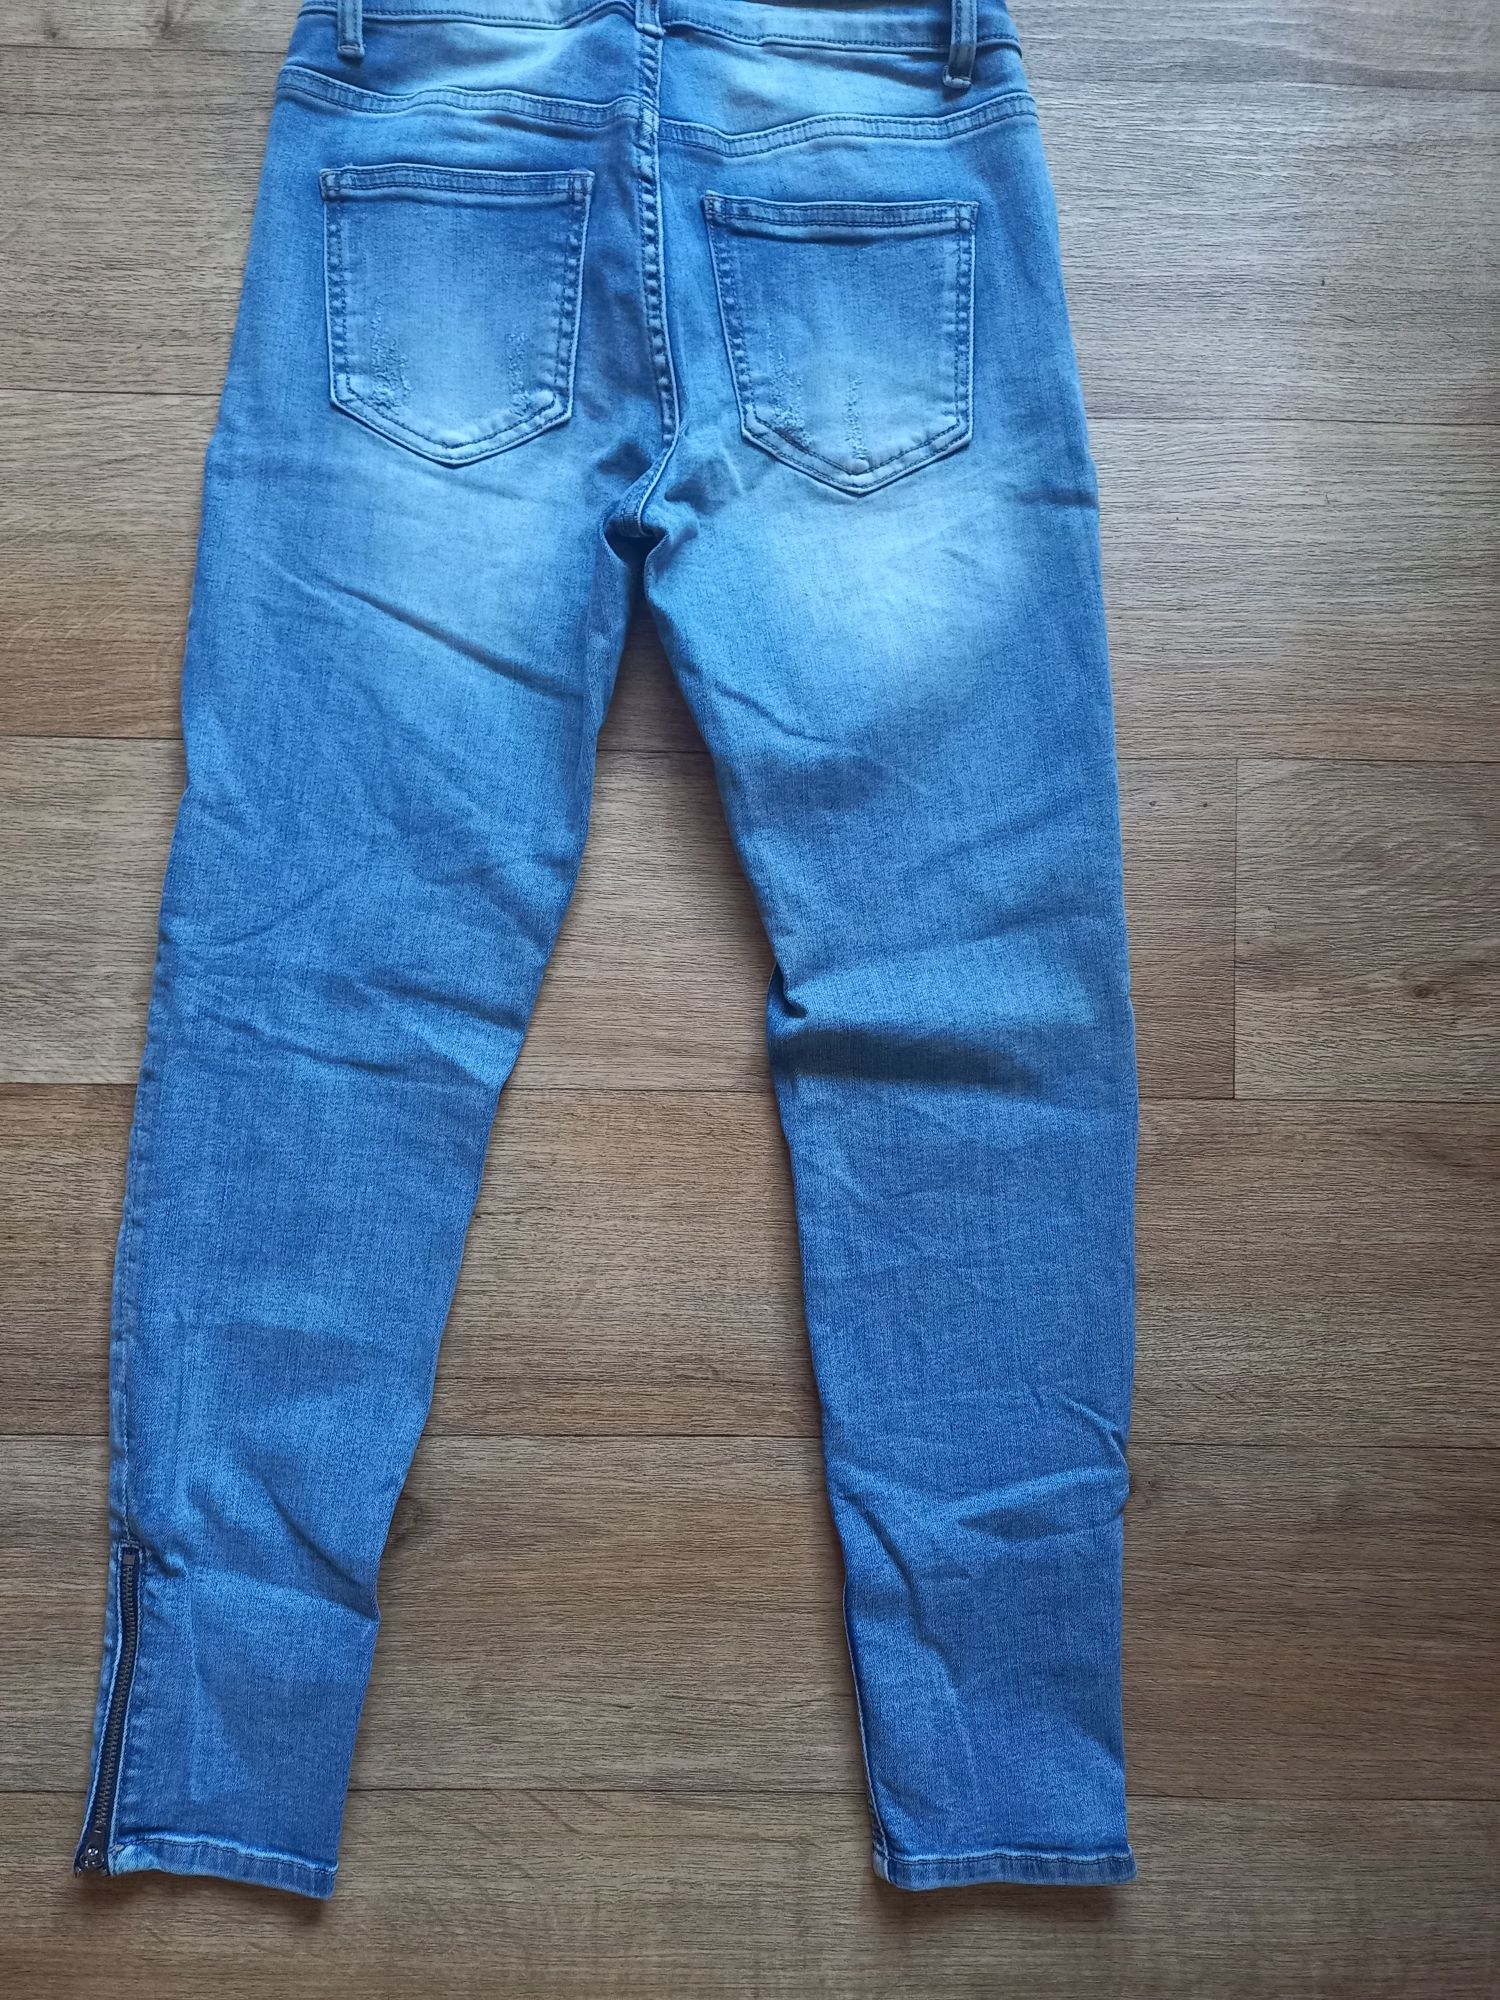 Spodnie damskie jeans Skinny 36